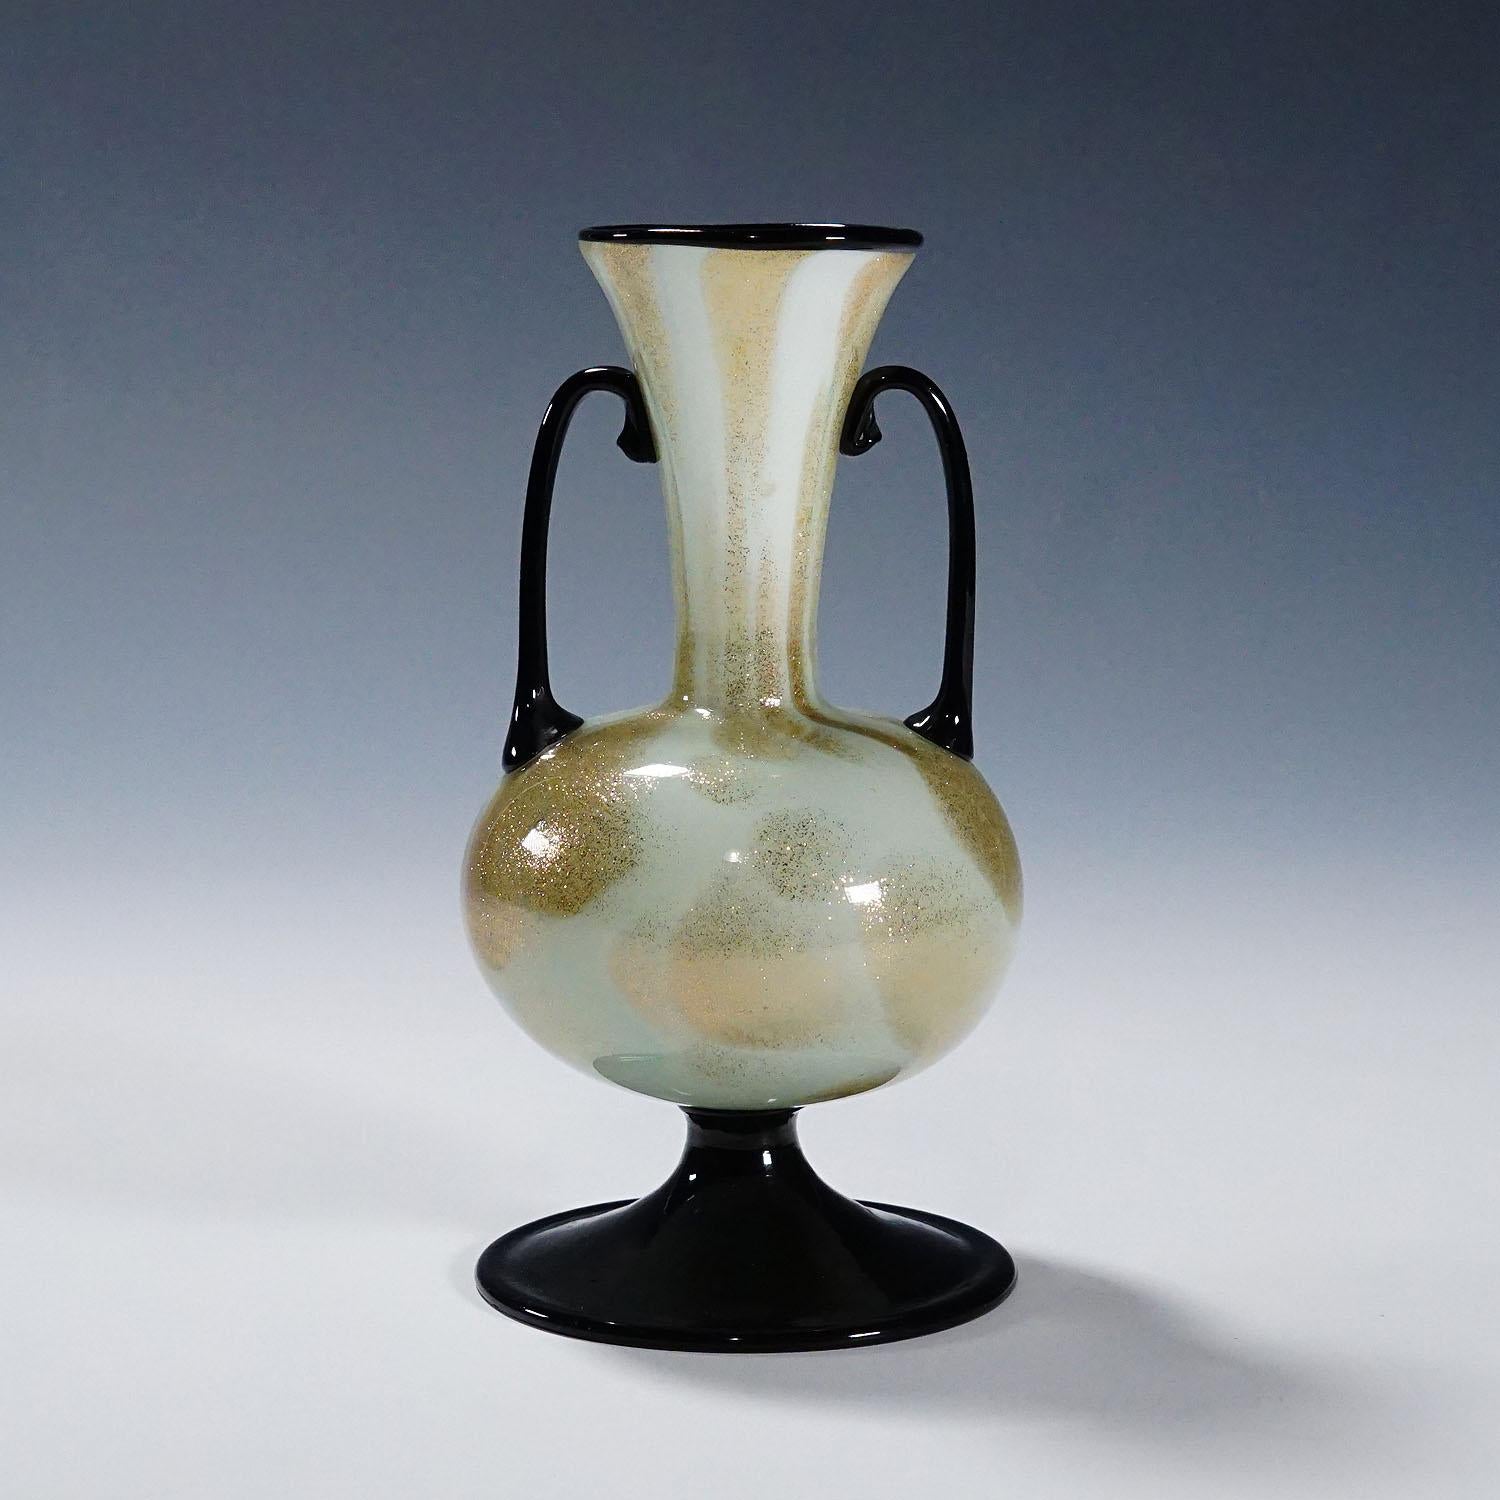 Vase aus Soffiato-Glas mit Aventurin von Fratelli Toso (attr.), Murano, ca. 1930er Jahre

Eine seltene Vase aus Murano-Kunstglas, wahrscheinlich von Fratelli Toso um 1930 hergestellt. Dünnes, opakes, weißes Glas mit Aventurineinschlüssen und